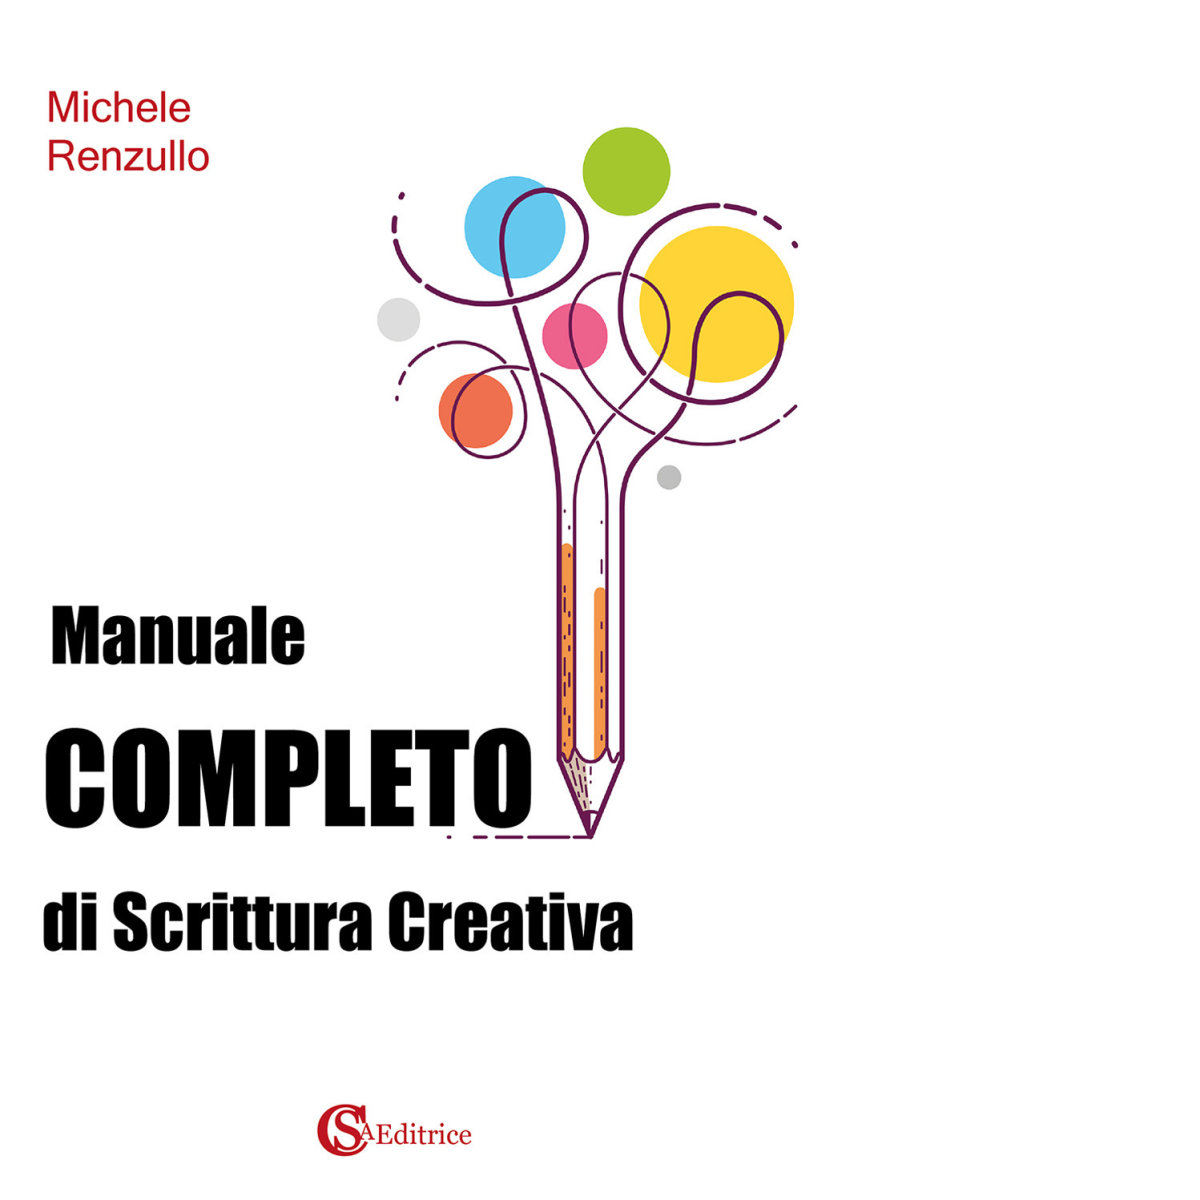 Manuale completo di scrittura creativa - Michele Renzullo - CSA, 2021